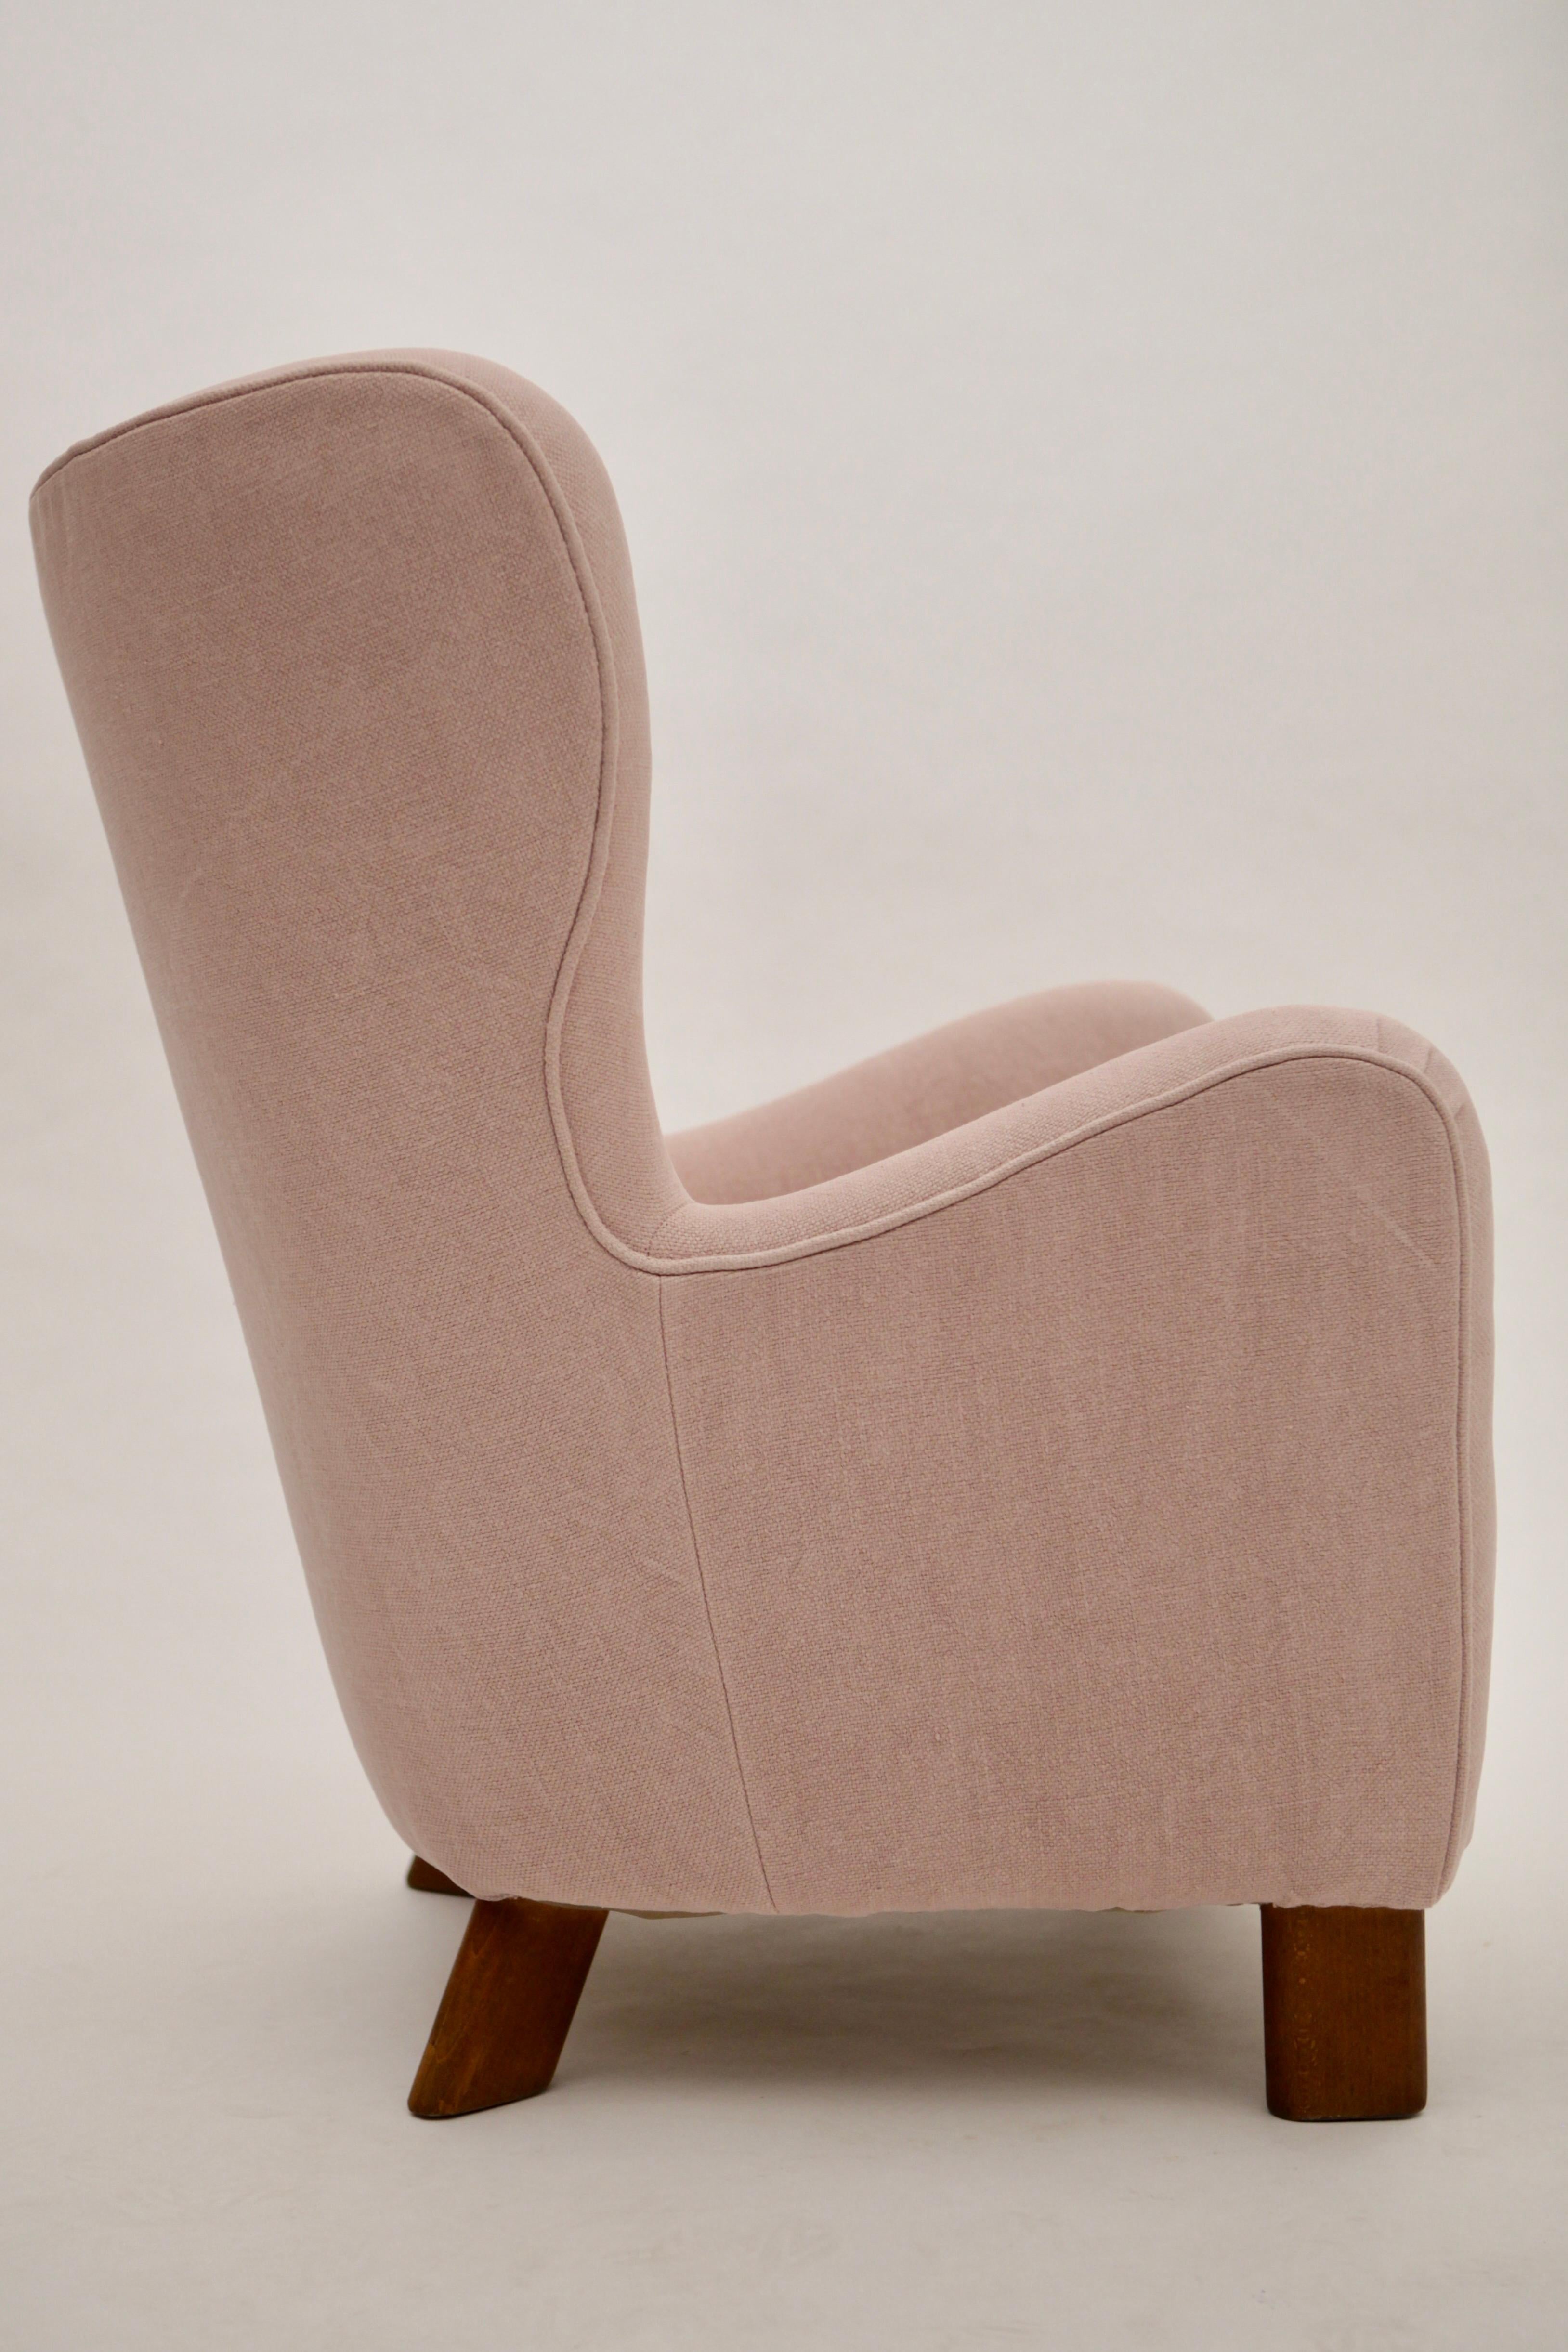 Fritz Hansen High Back Lounge Chair, Model 1669, Denmark, 1940s For Sale 1